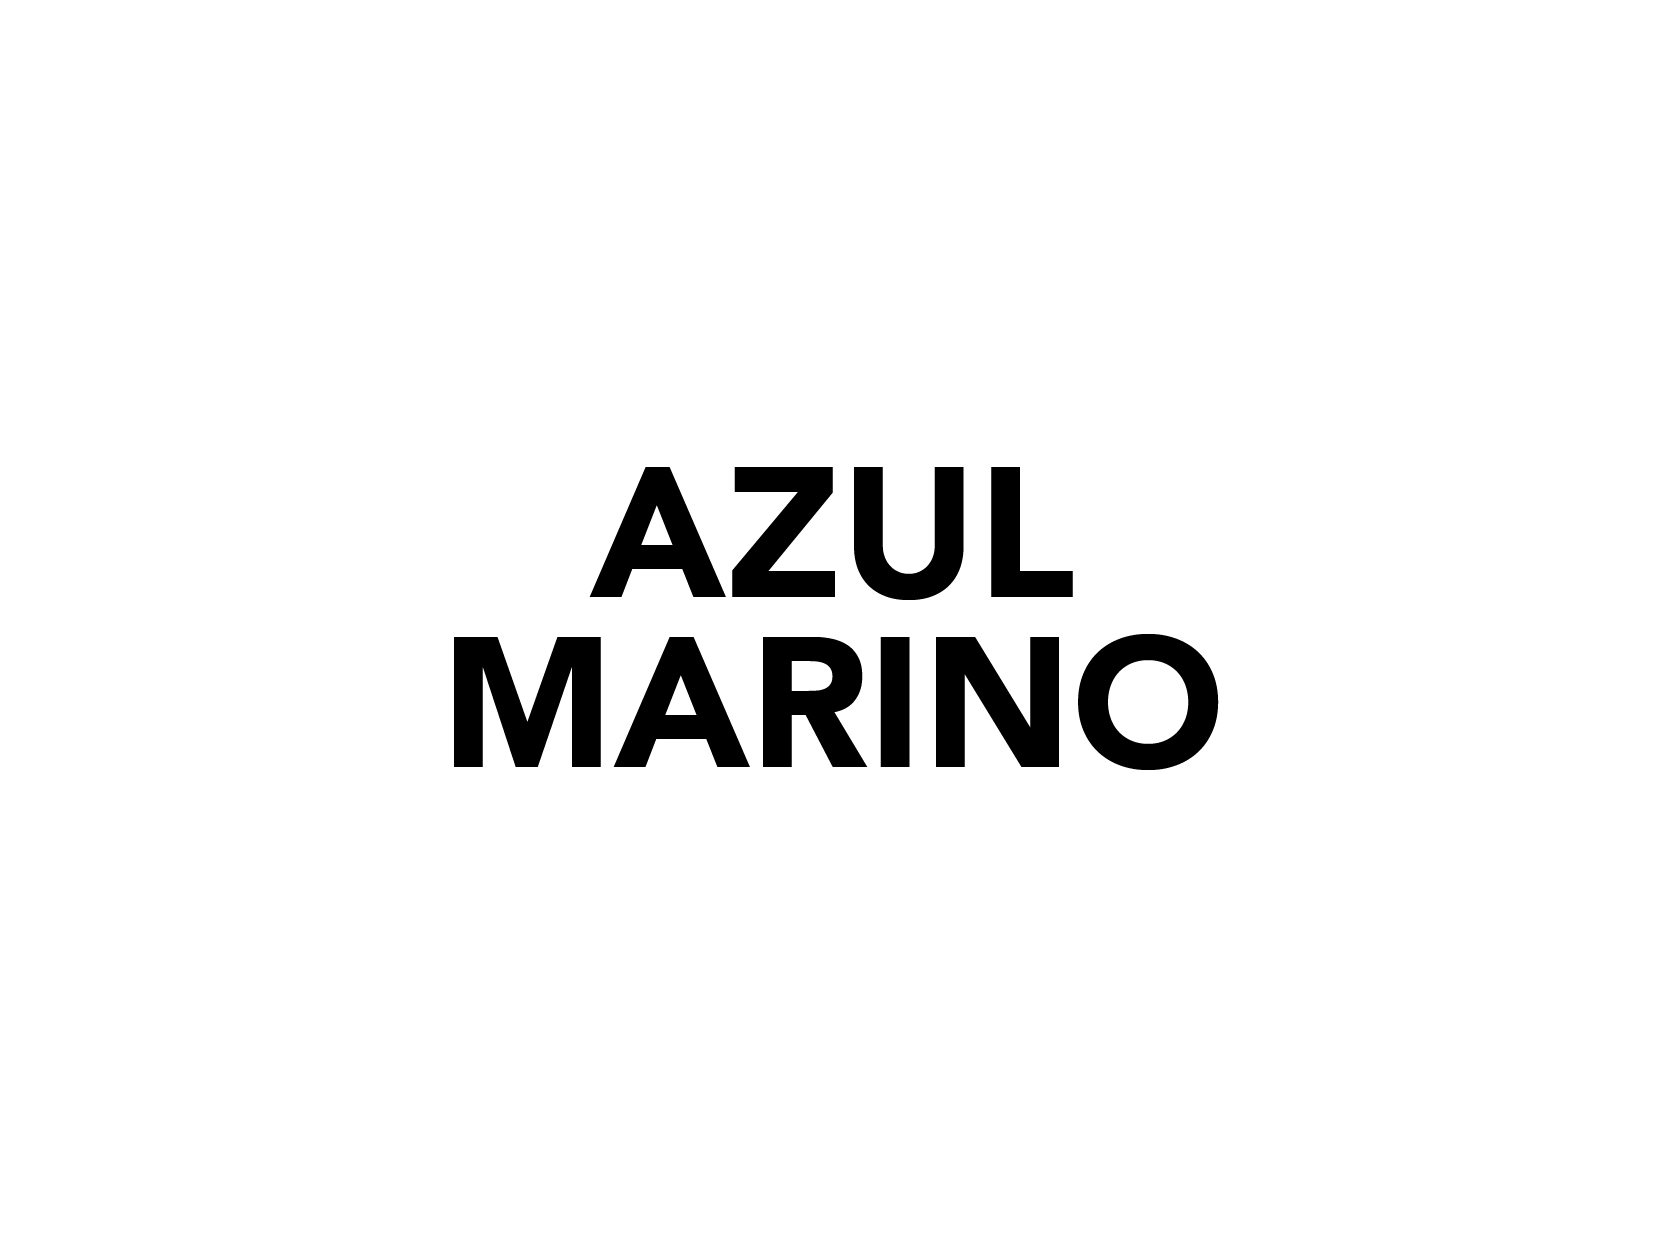 AZUL MARINO